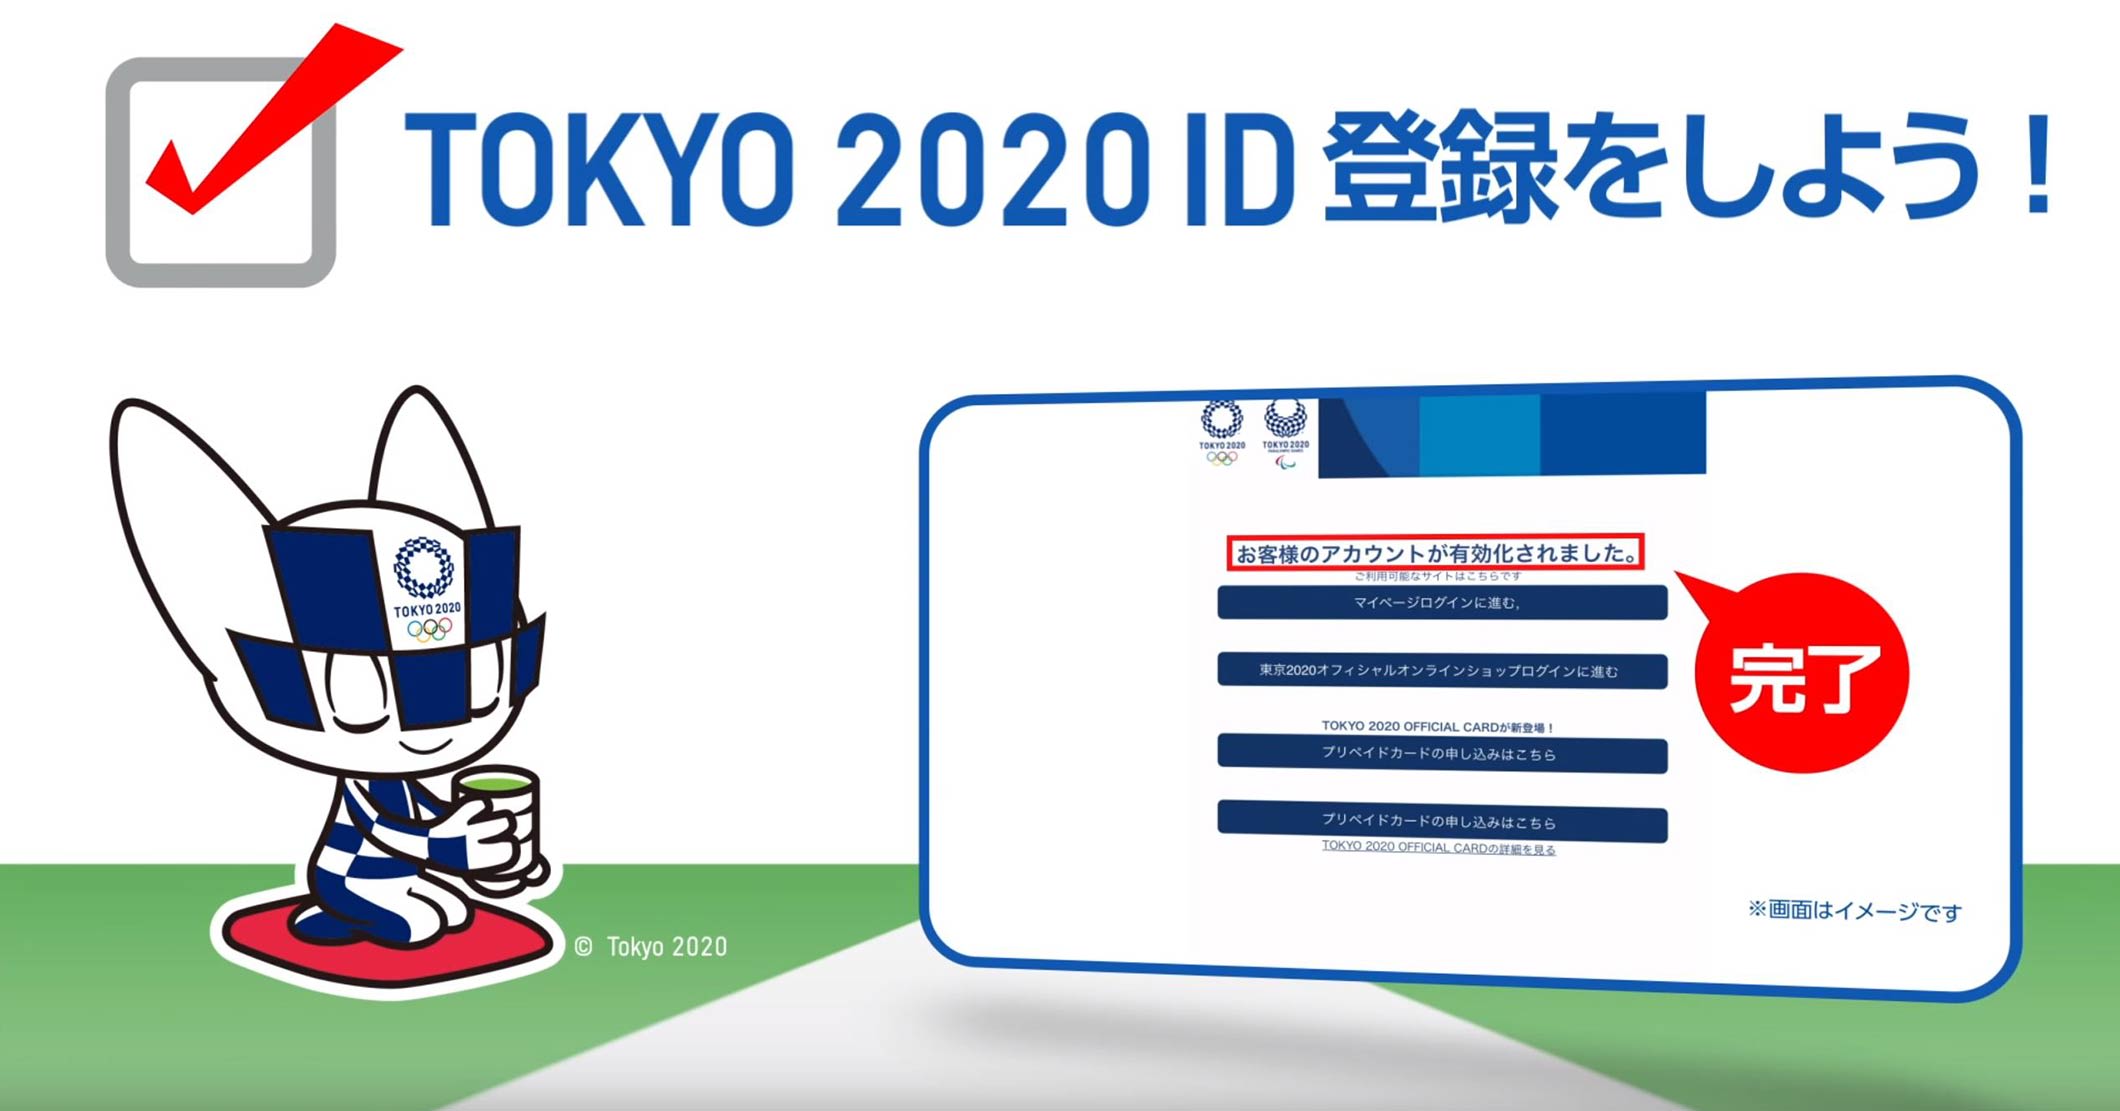 Tokyo 2020 Tickets